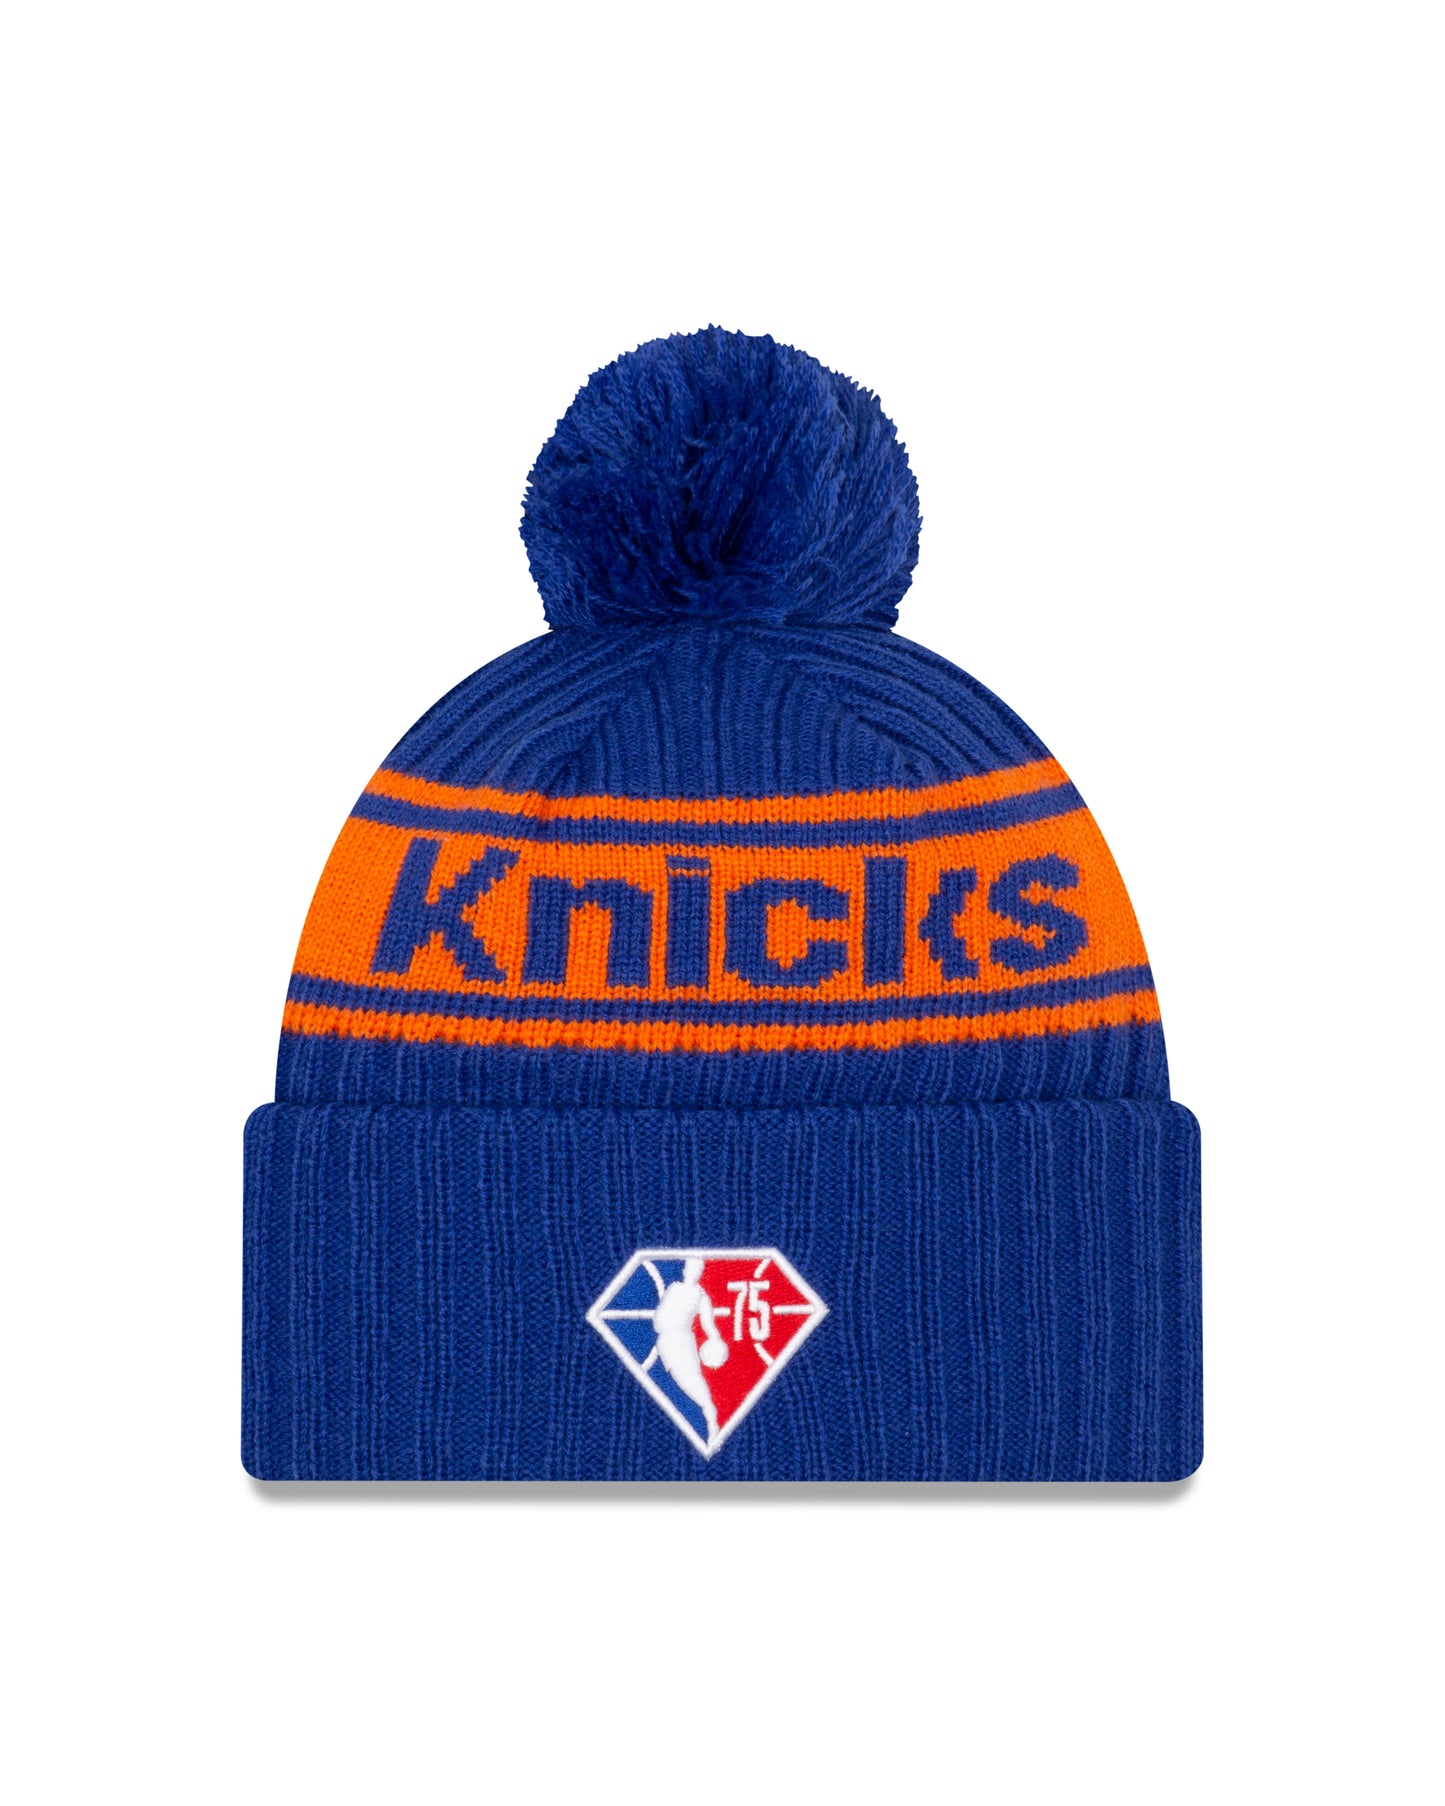 New York Knicks New Era Draft Knit Hat